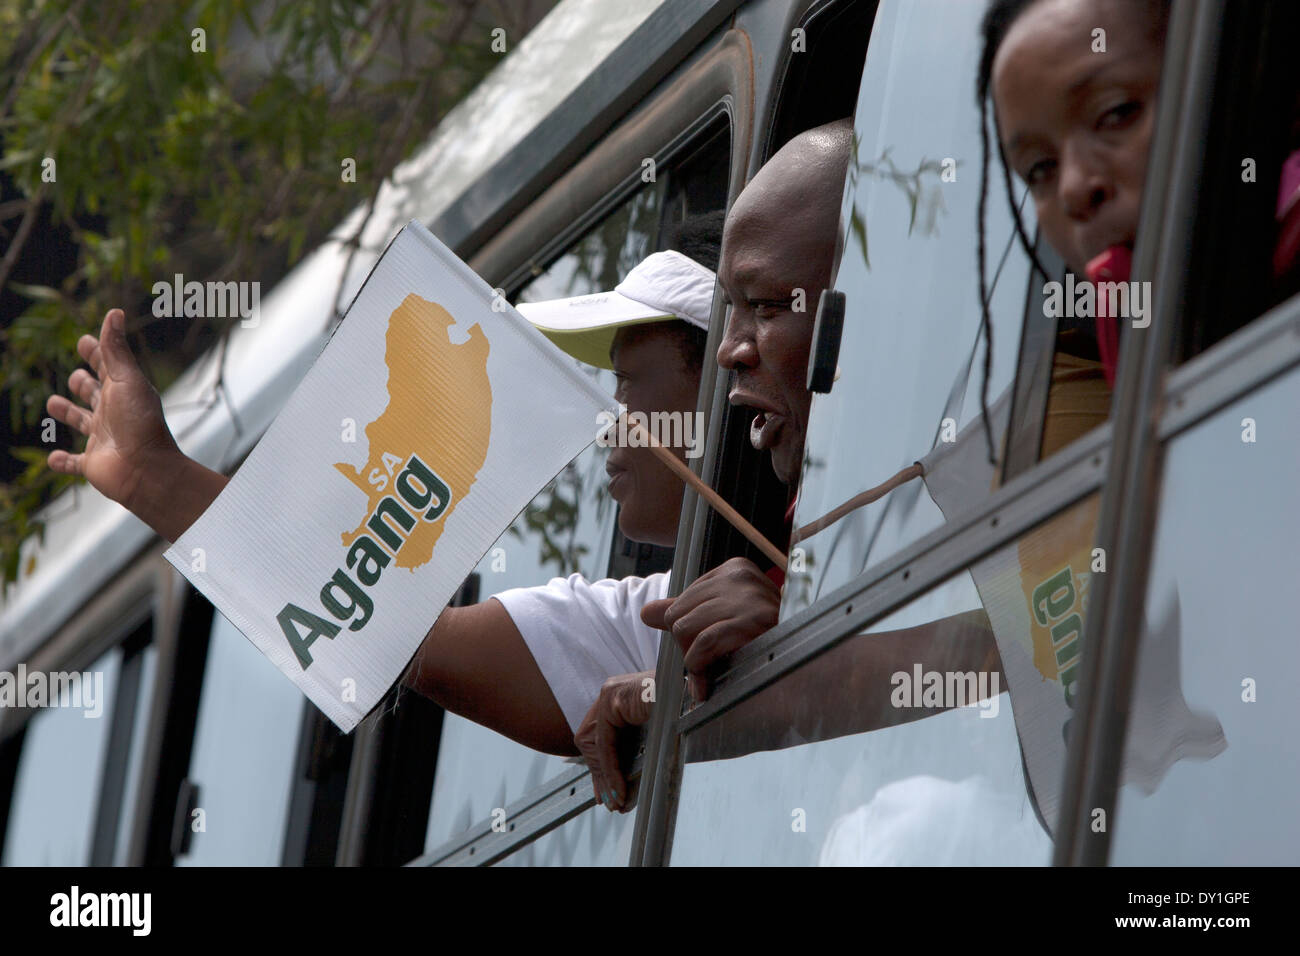 Agang sa chef de parti Mamphela Ramphele et membres a lancé sa campagne électorale nationale et a pris un tour d'autobus dans et autour de Banque D'Images